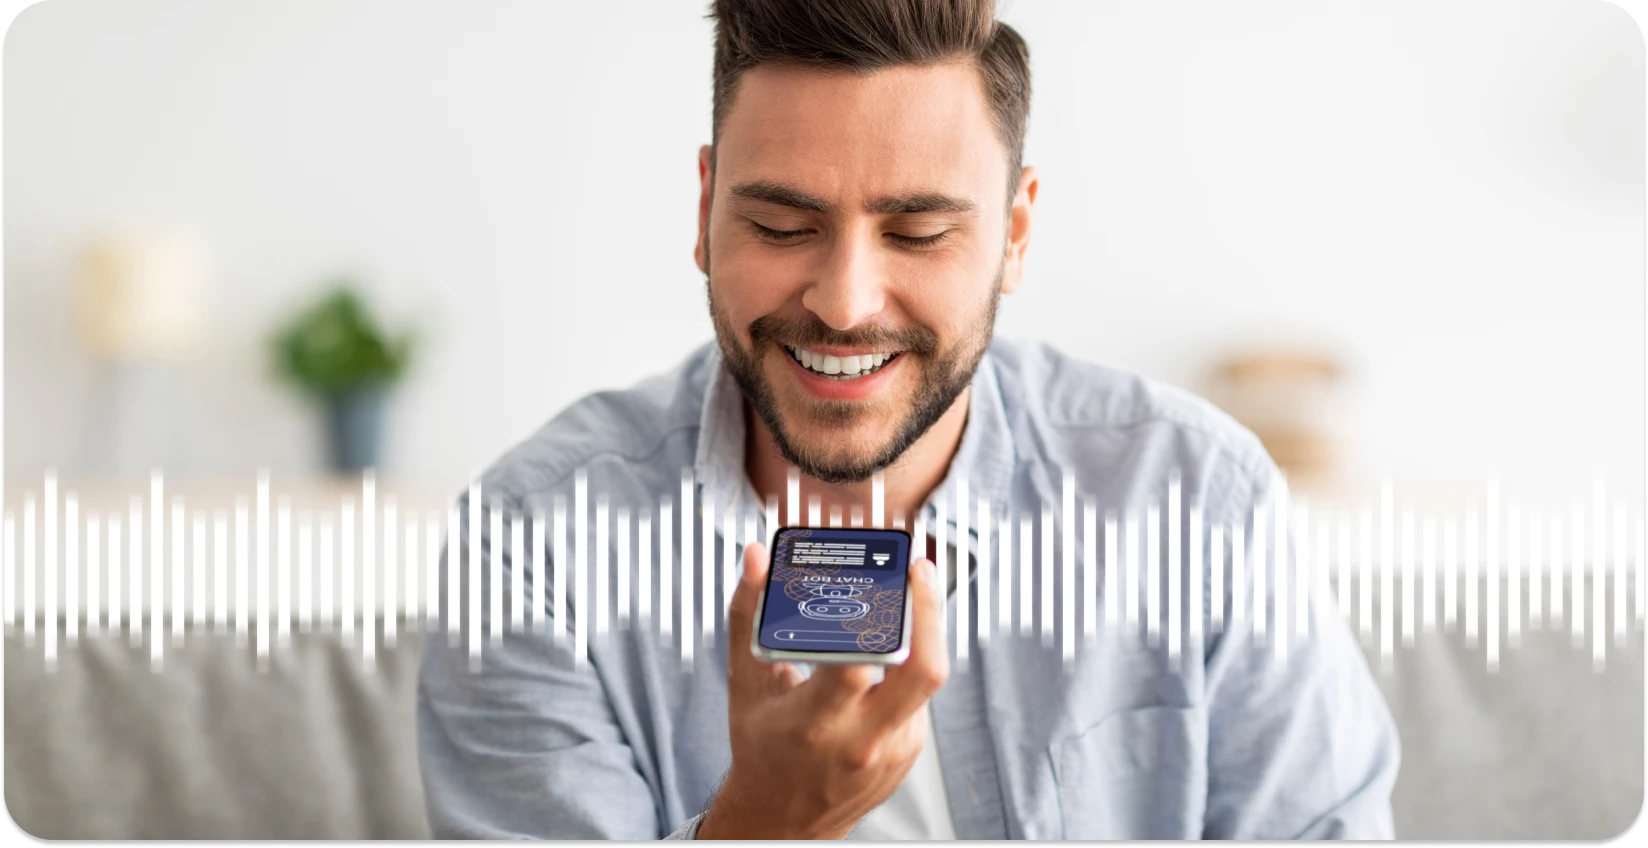 Mann smiler mens han bruker en smarttelefonapp for å trimme lydbølger, noe som forbedrer online redigeringsopplevelse.